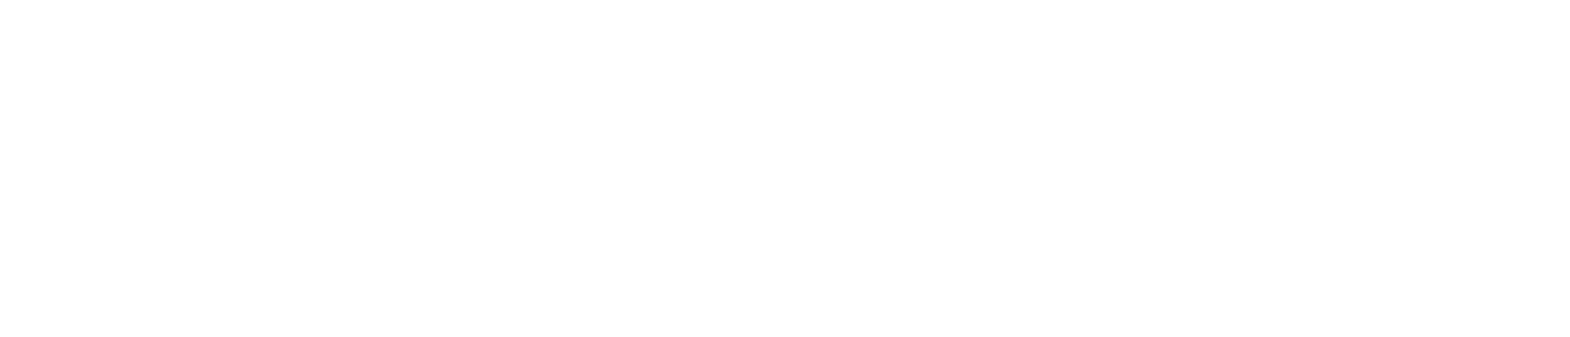 OneSpan logo large for dark backgrounds (transparent PNG)